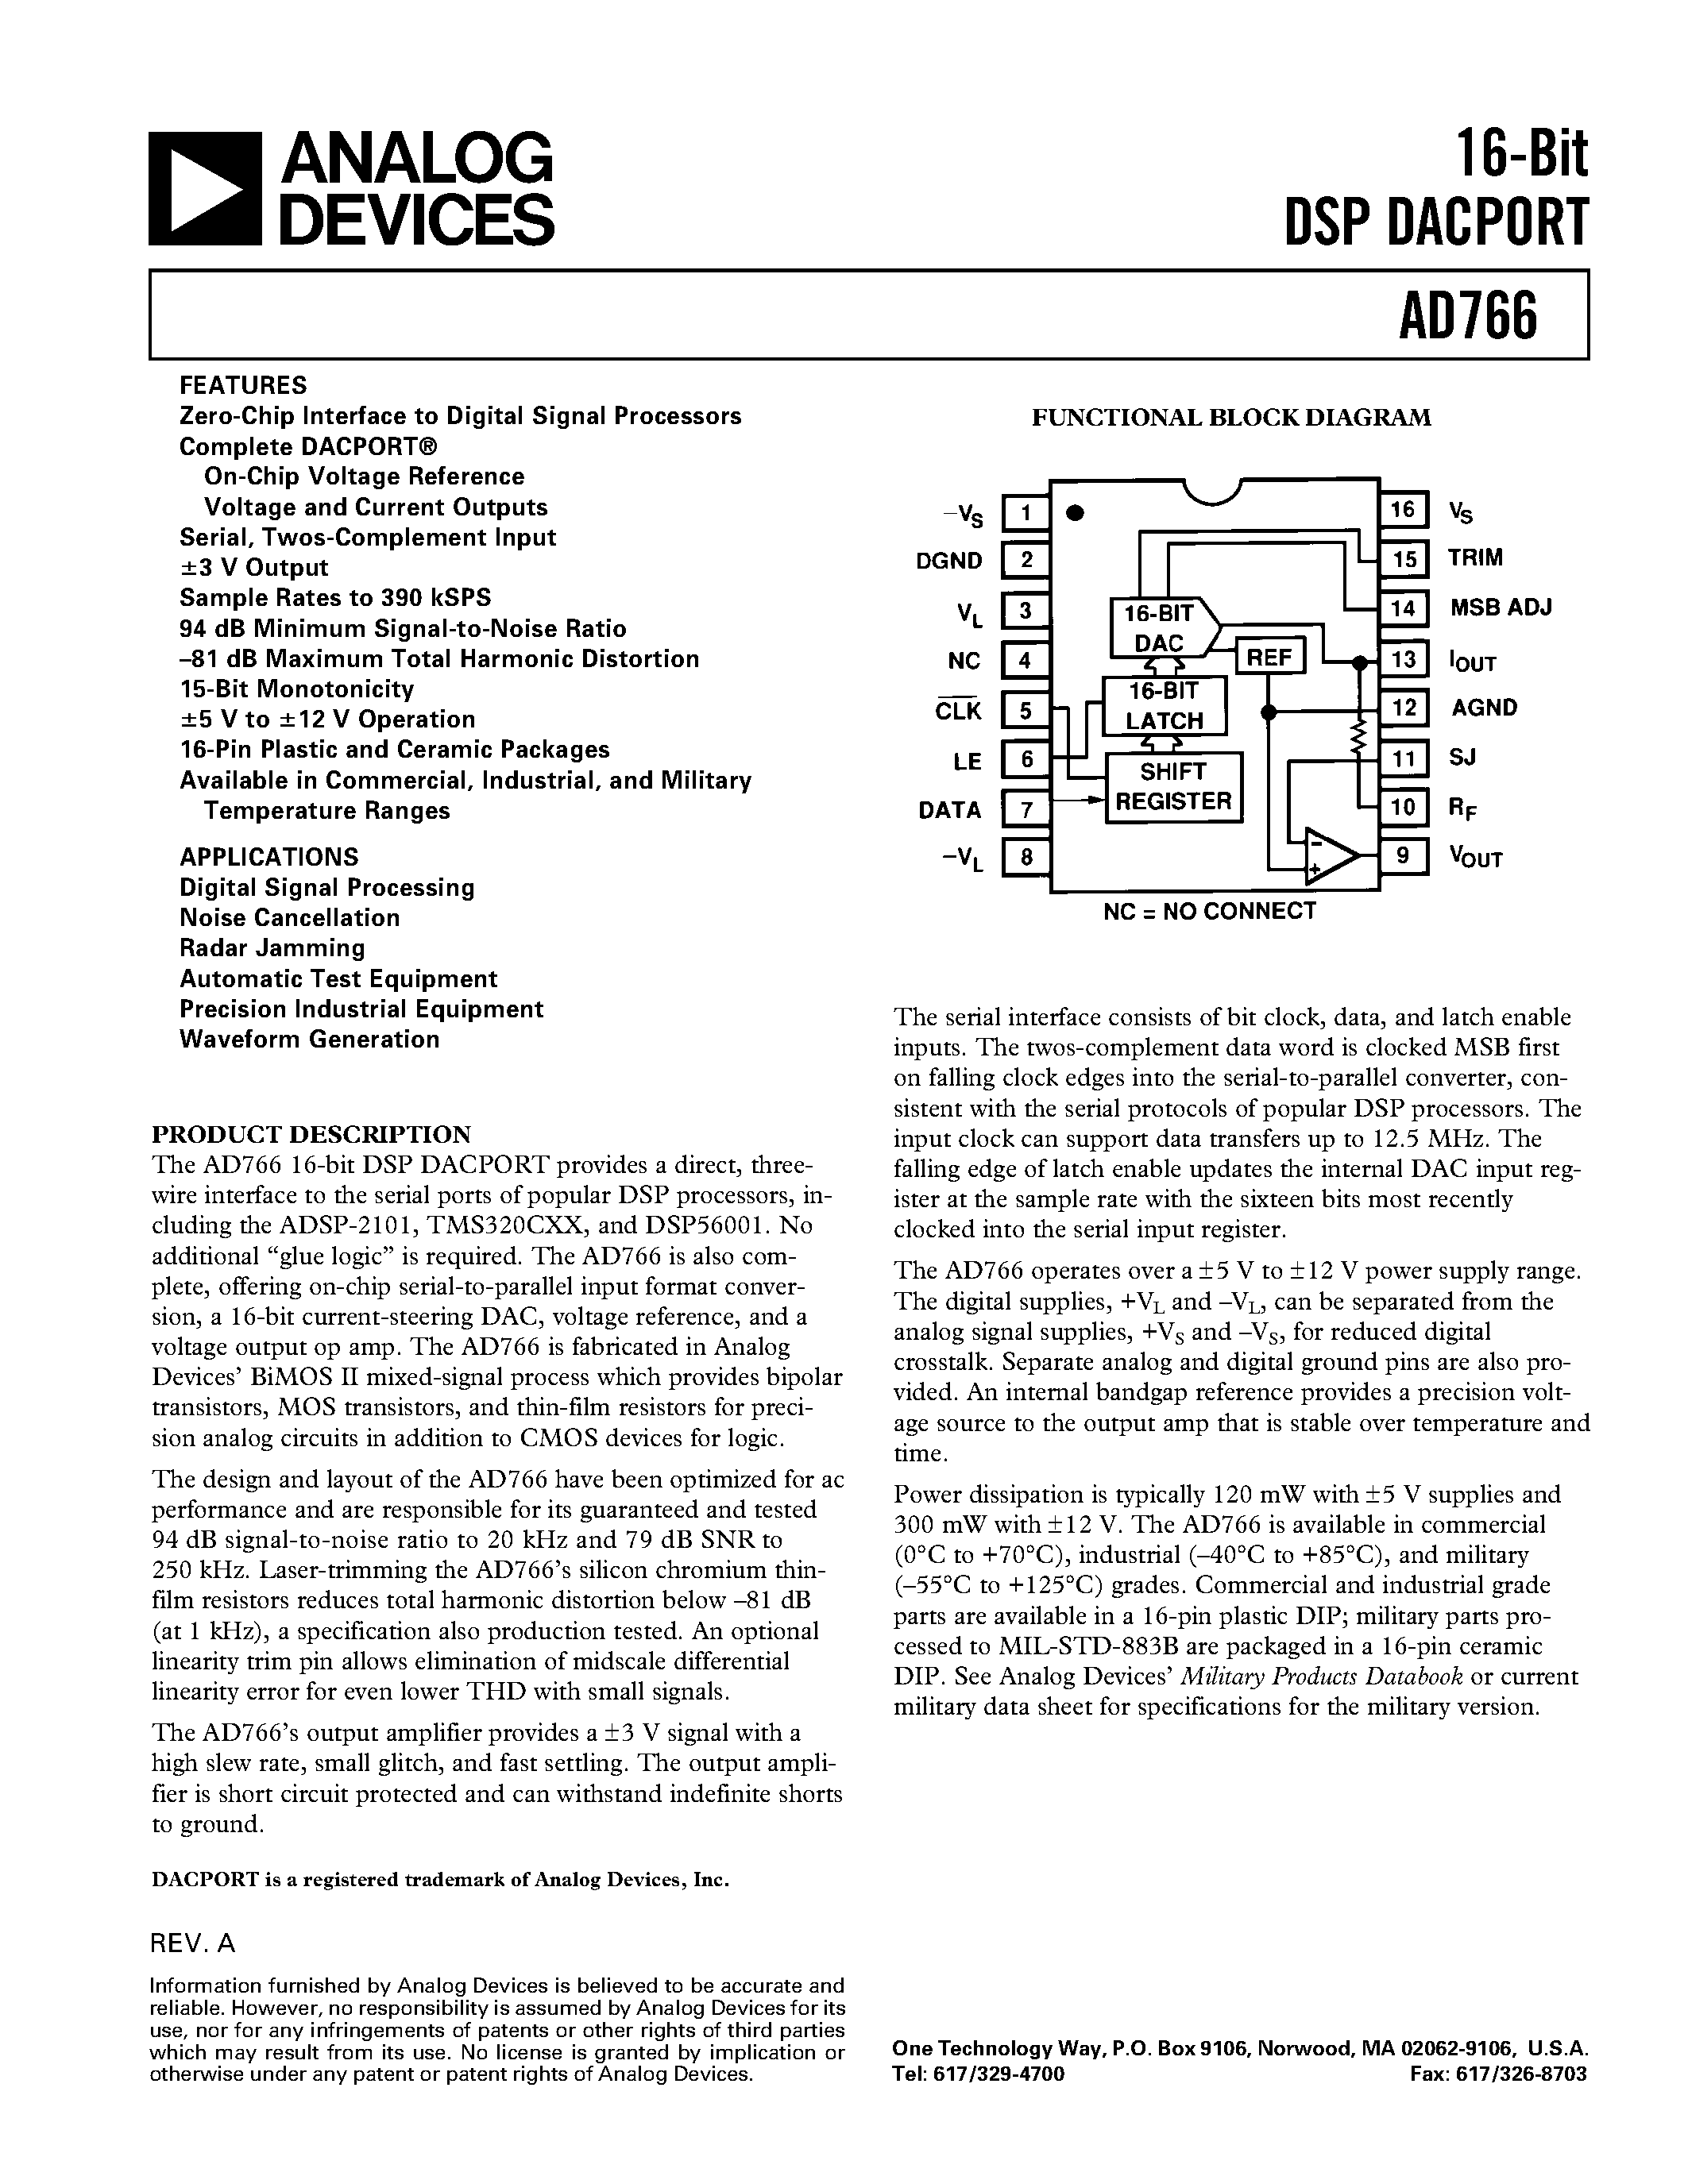 Datasheet AD766 - 16-Bit DSP DACPORT page 1